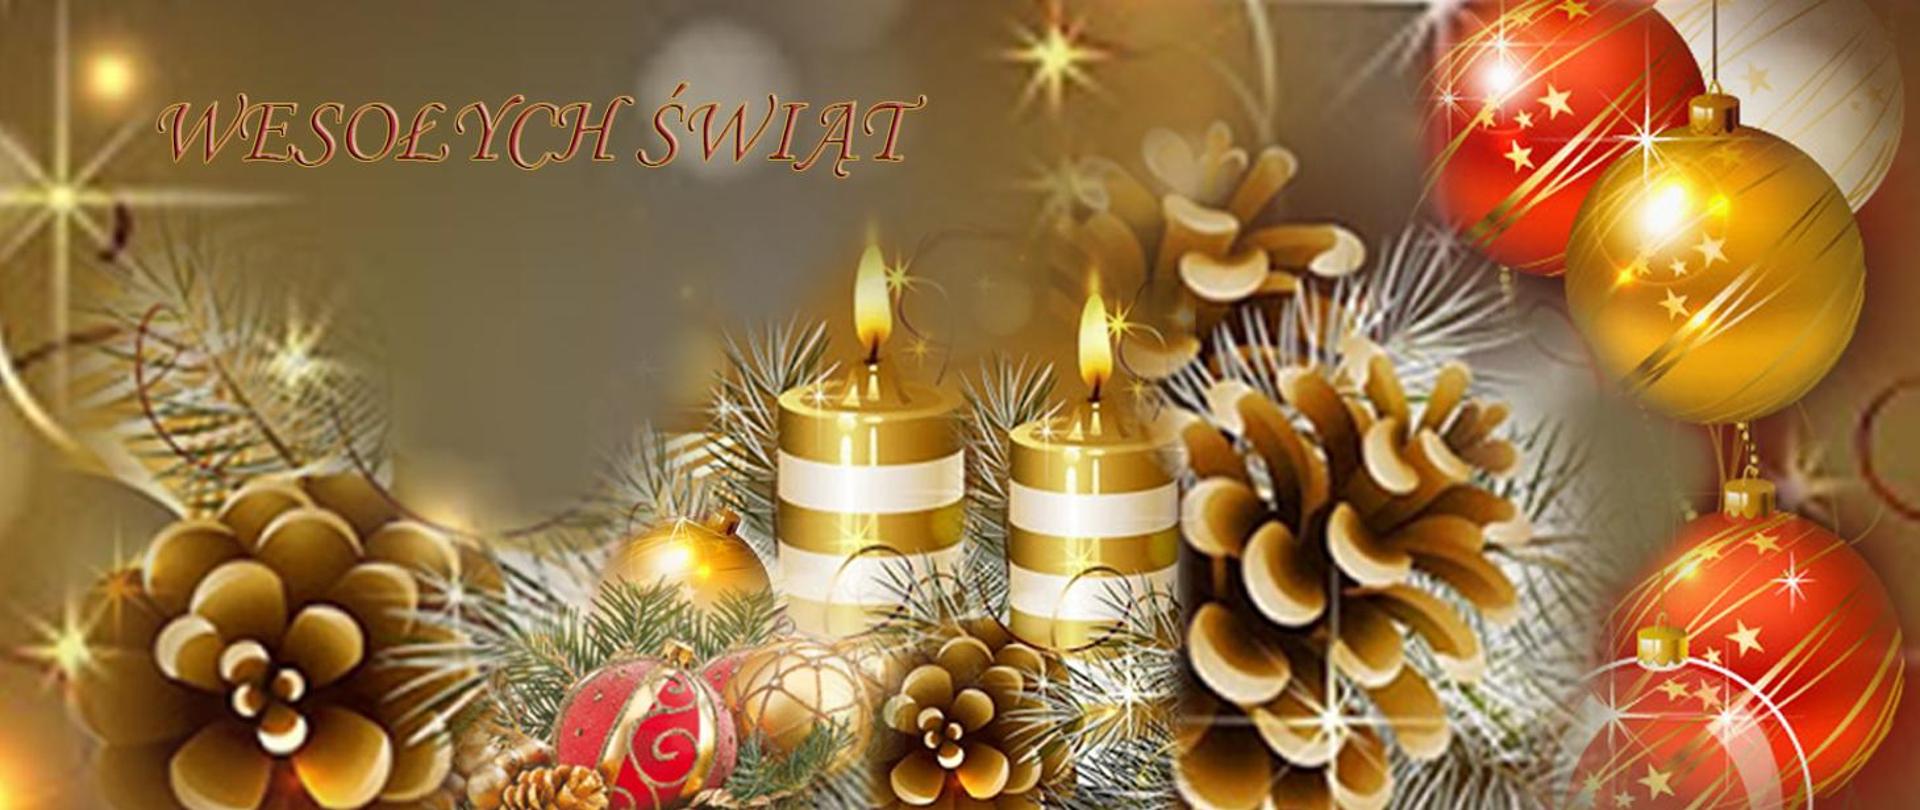 Kartka kompozycja świąteczna: świece, bombki, szyszki gałązki świerku. Przeważa kolor złoty, w lewej górnej części napis dużymi literami wesołych świąt.